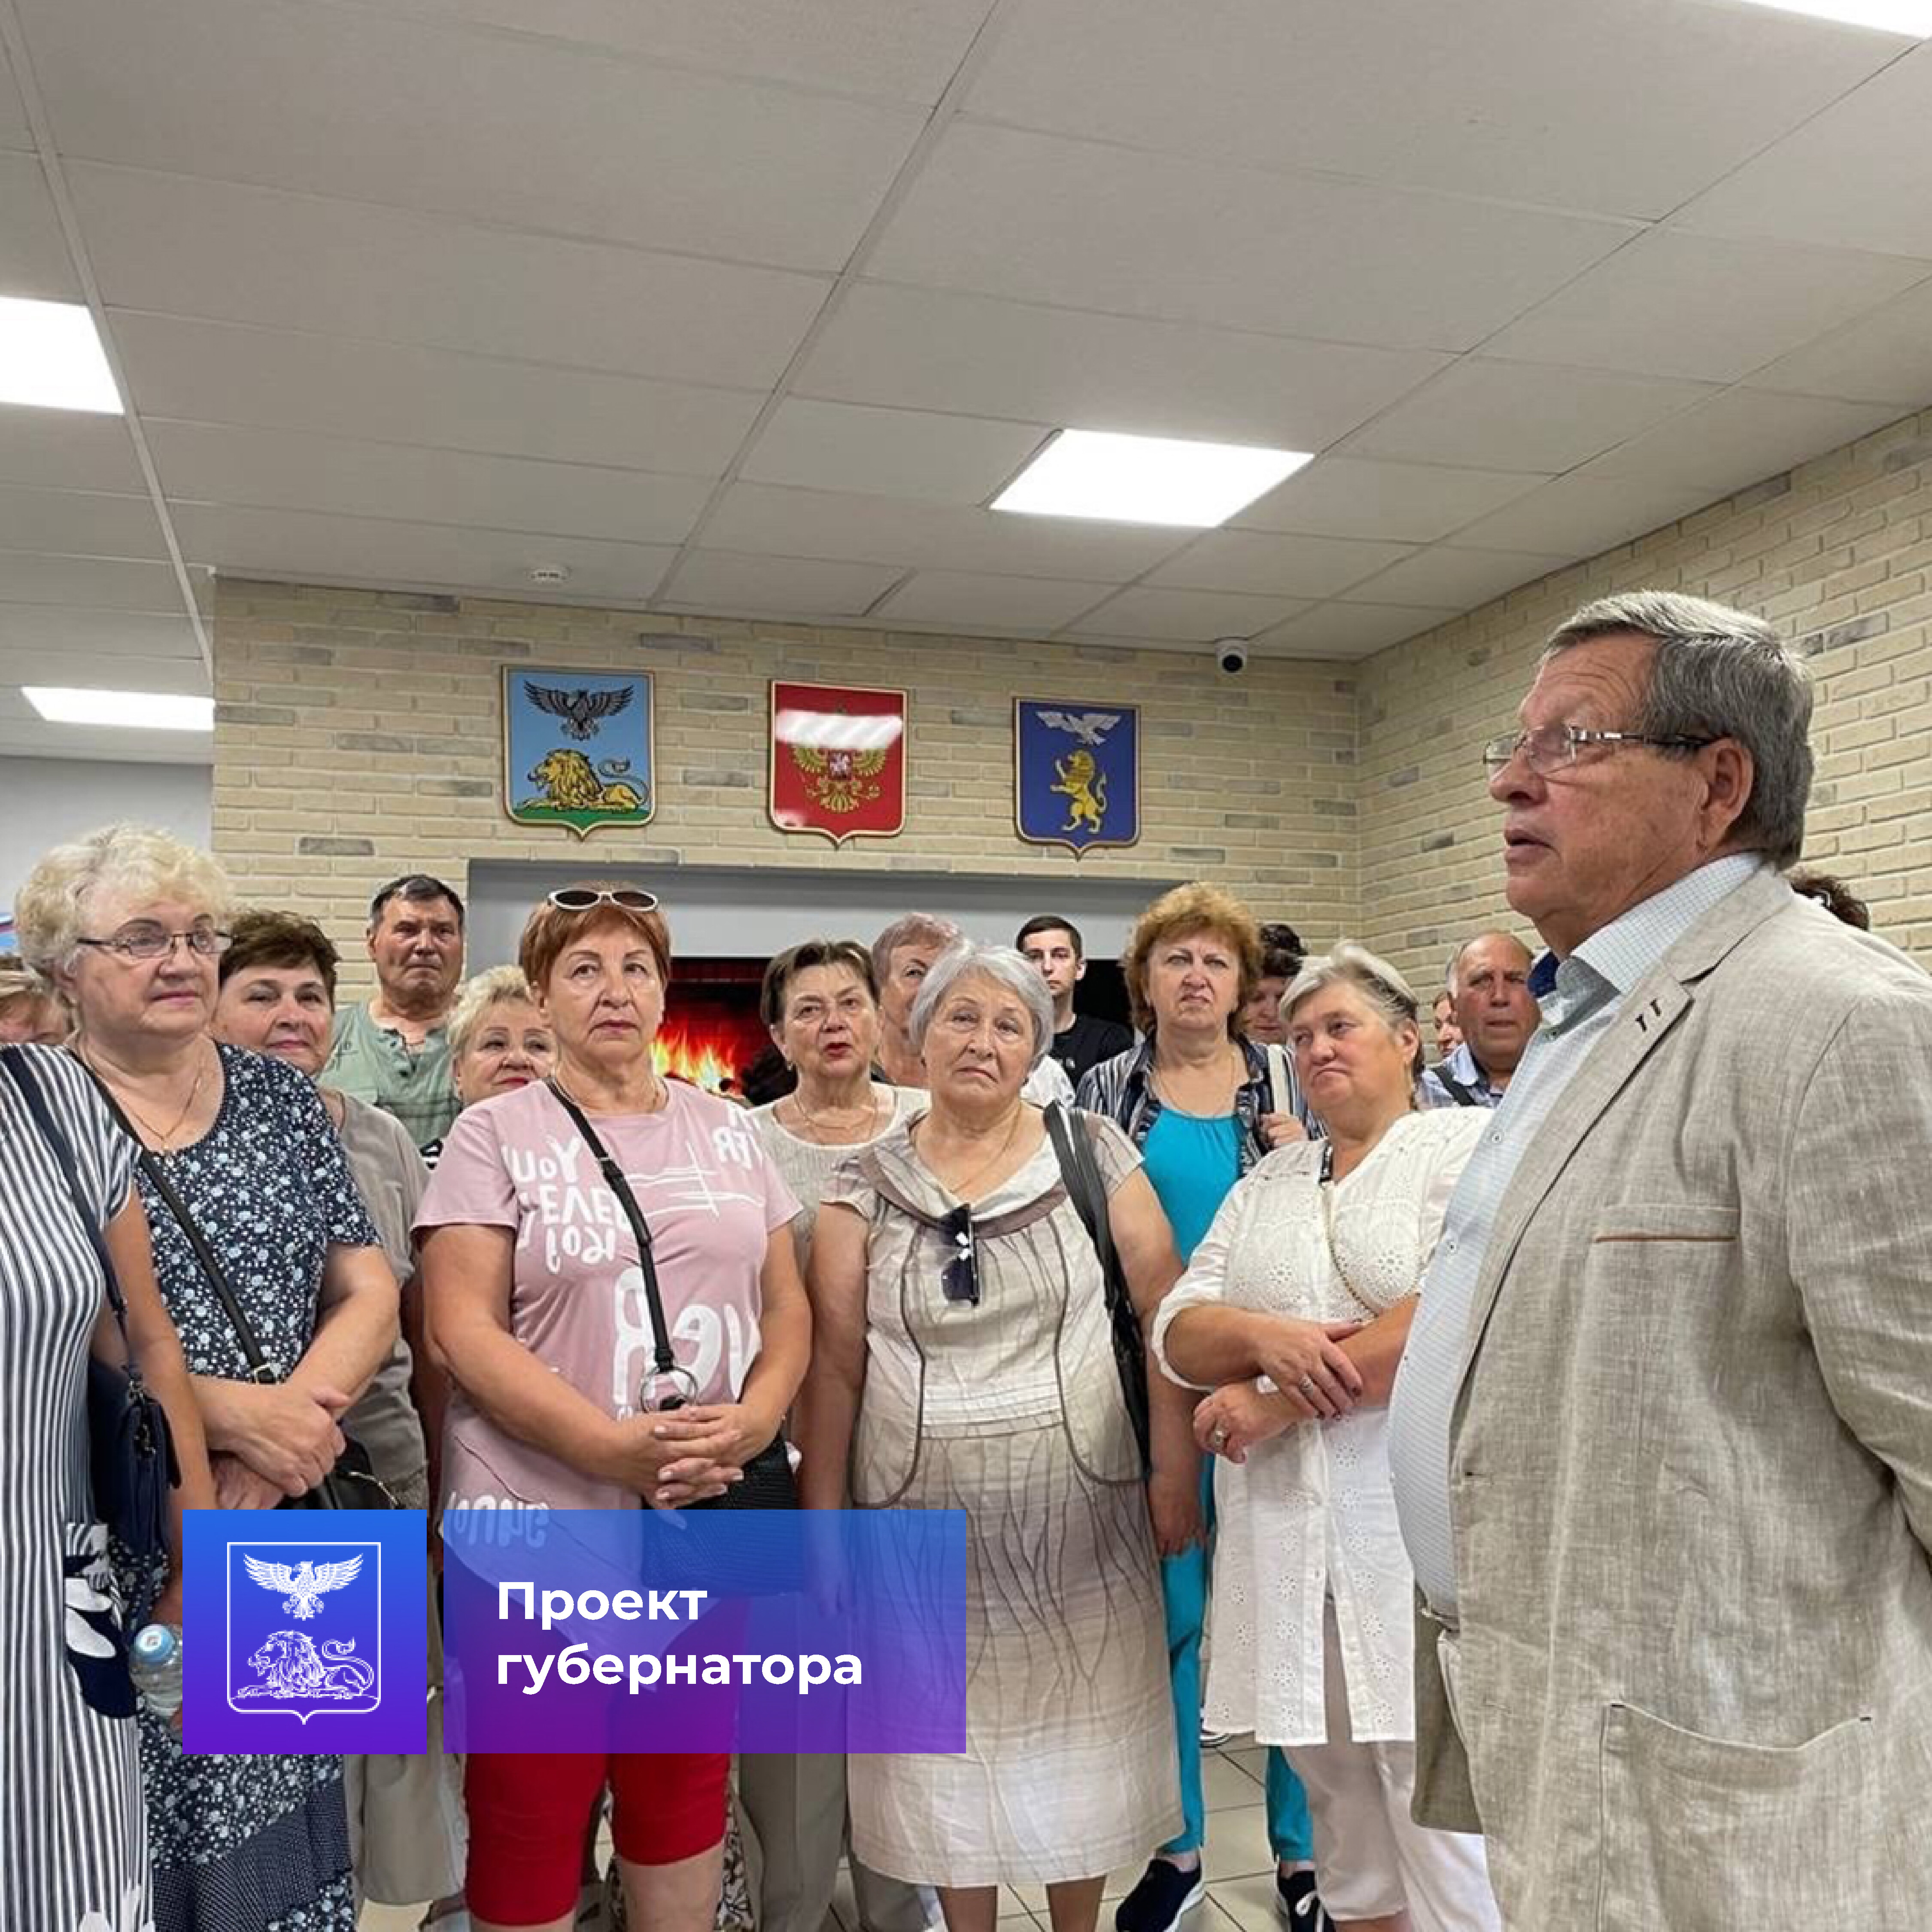 В рамках проекта губернатора «К соседям в гости» в Белгороде побывали три туристические группы из Яковлевского и Губкинского городских округов.